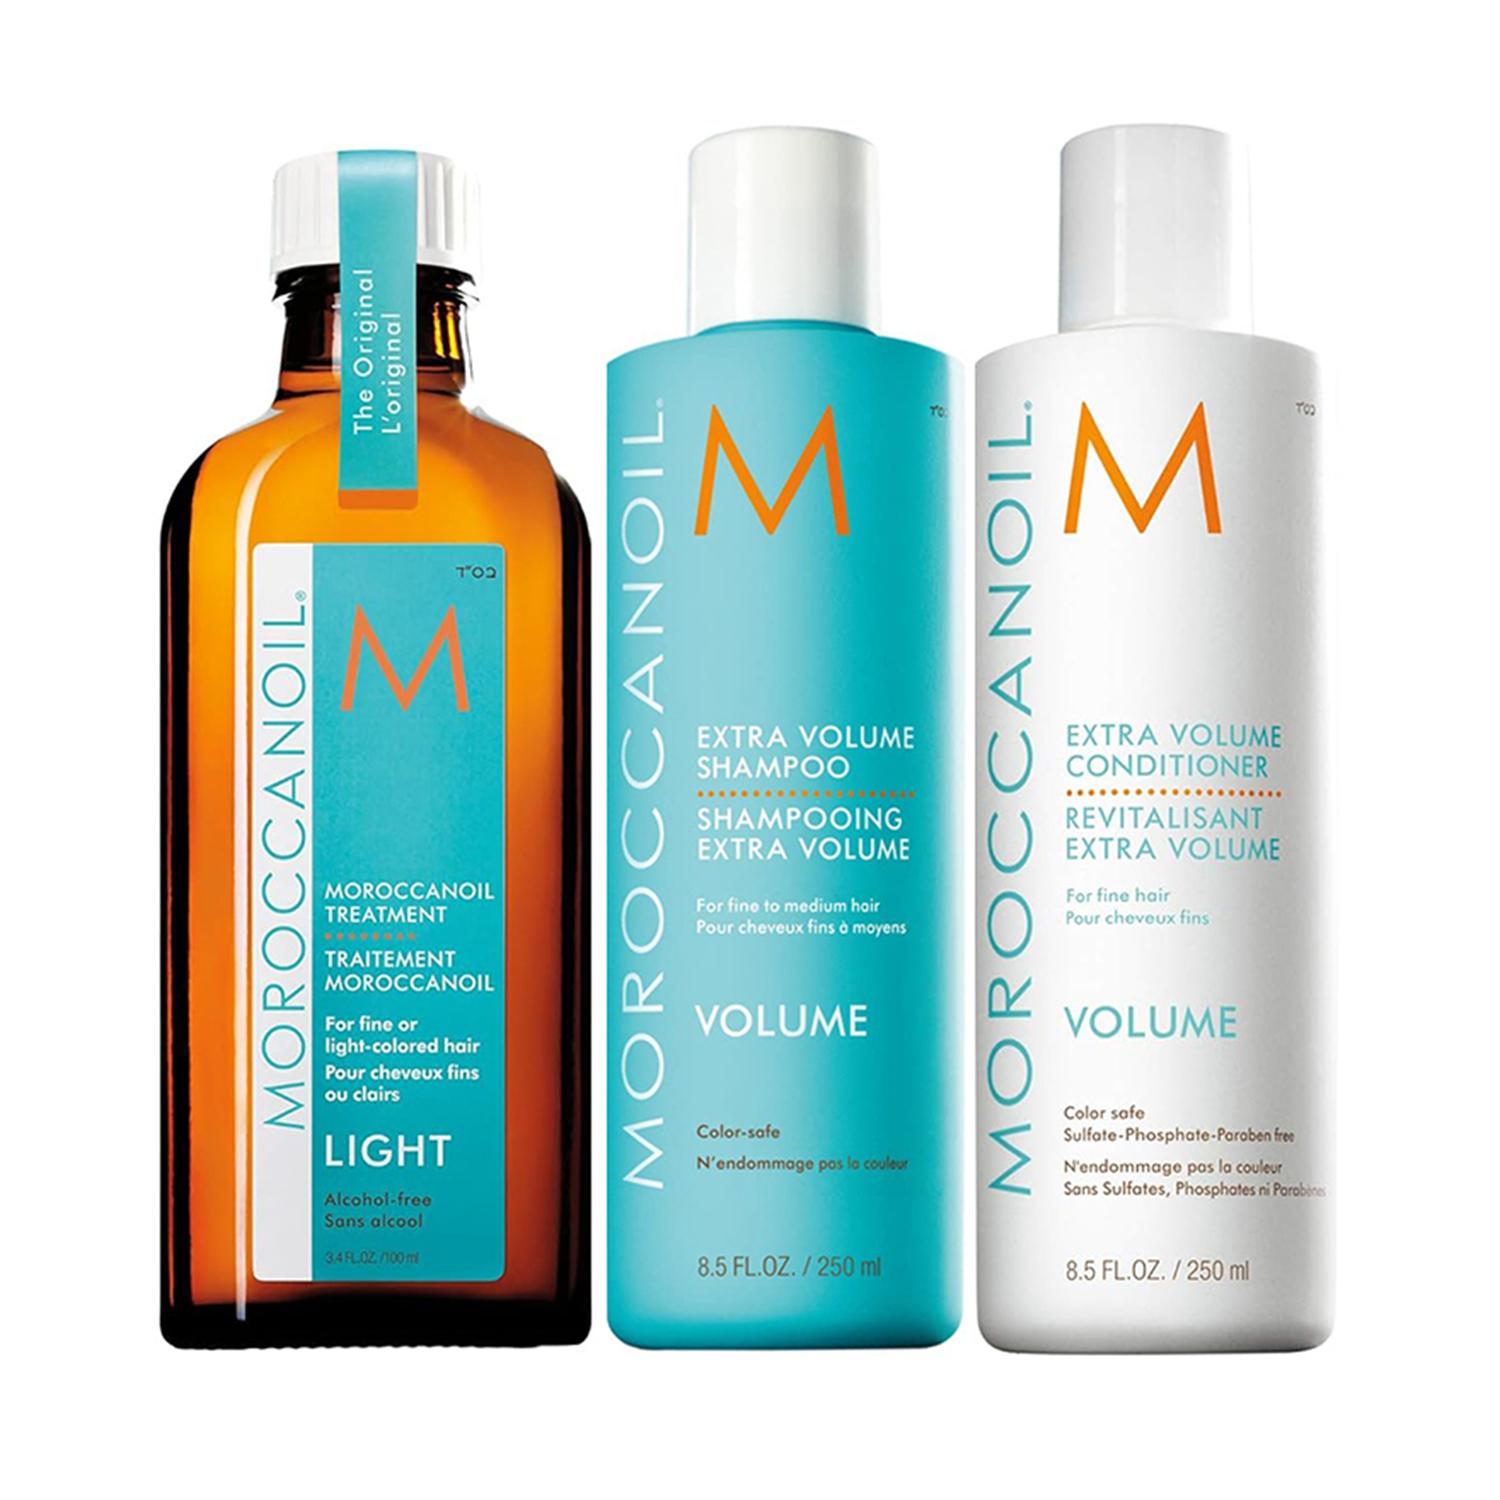 Moroccanoil | Moroccanoil Treatment Light Oil, Extra Volume Shampoo & Conditioner - Volume Combo